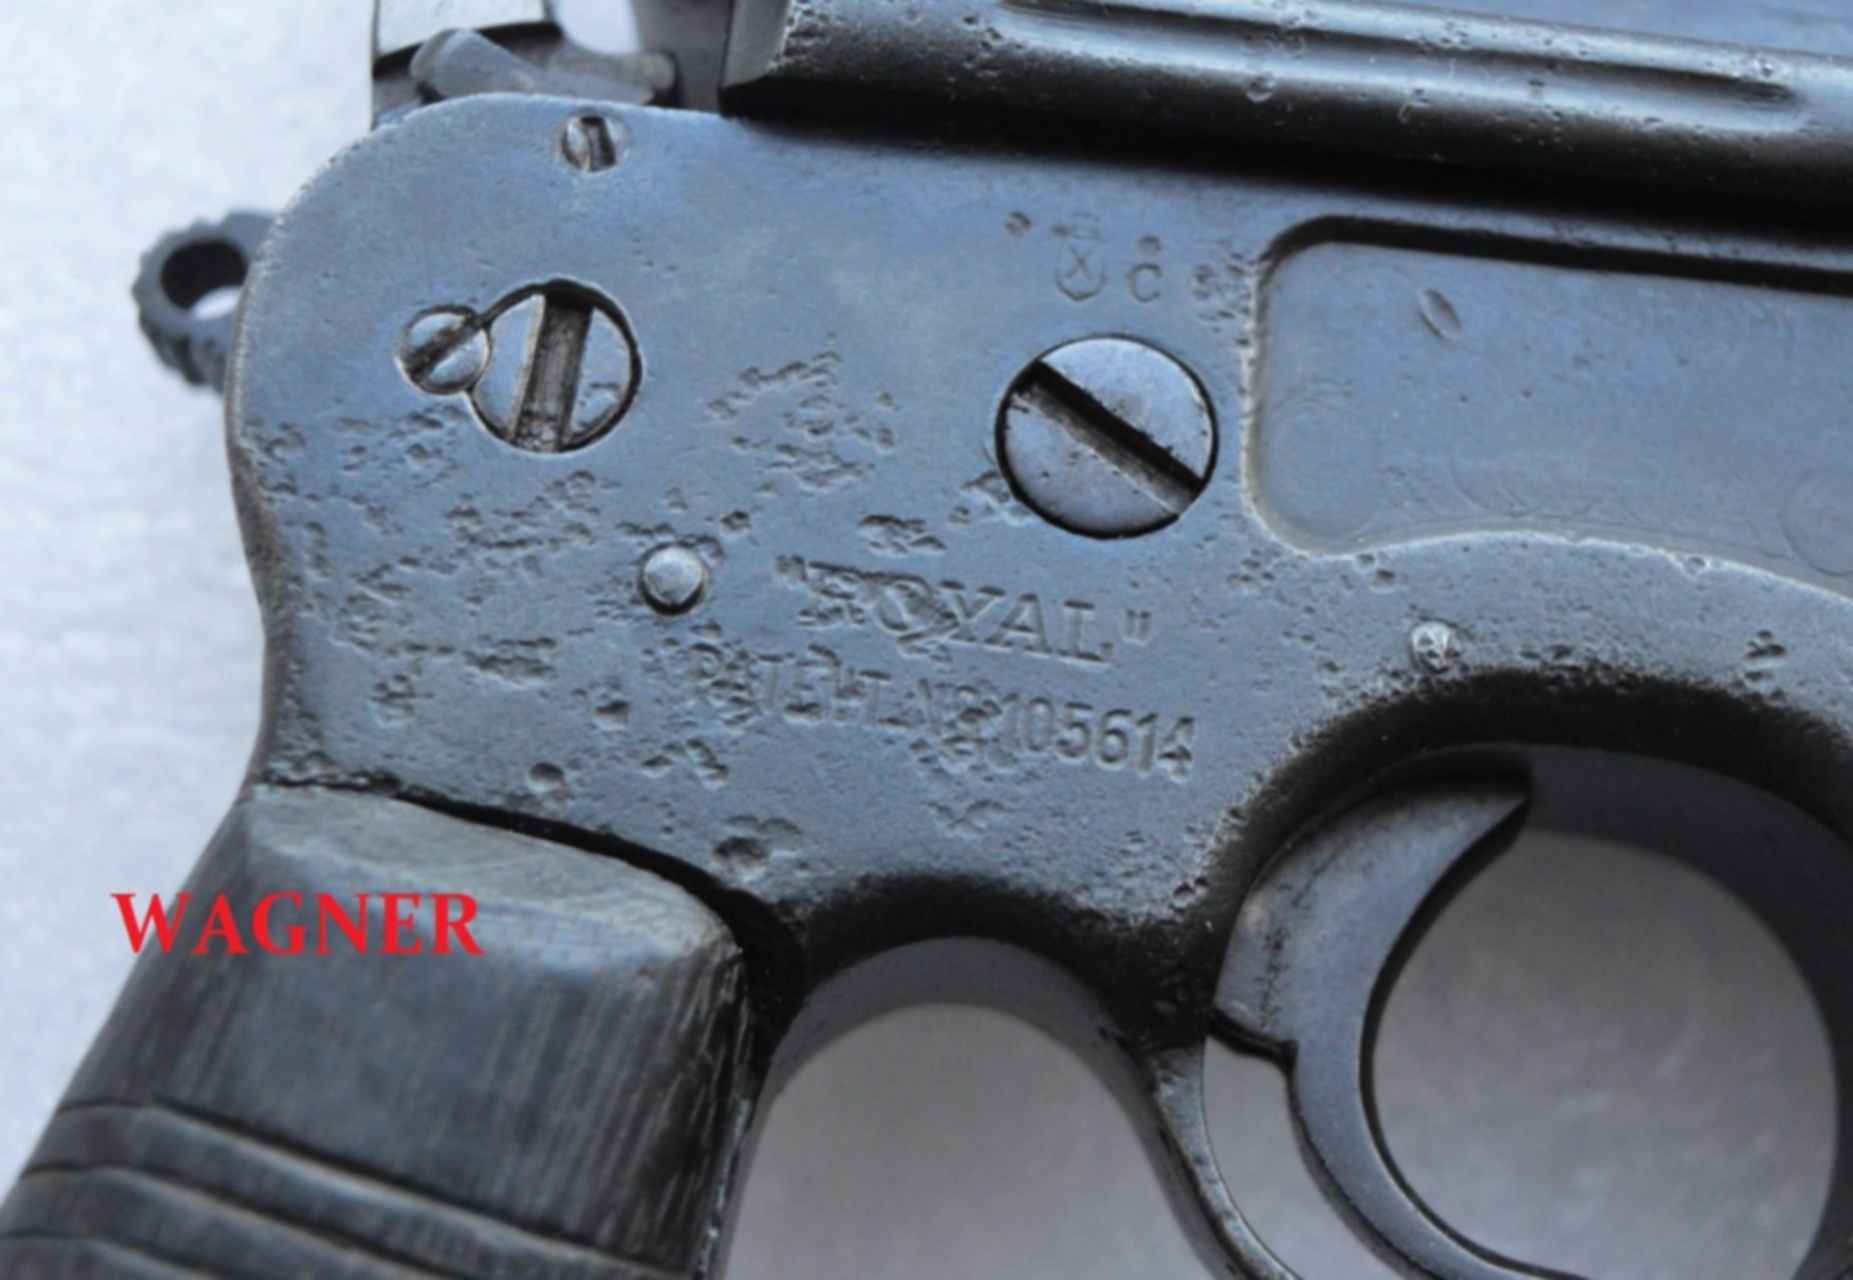 Mauser c96 — википедия. что такое mauser c96